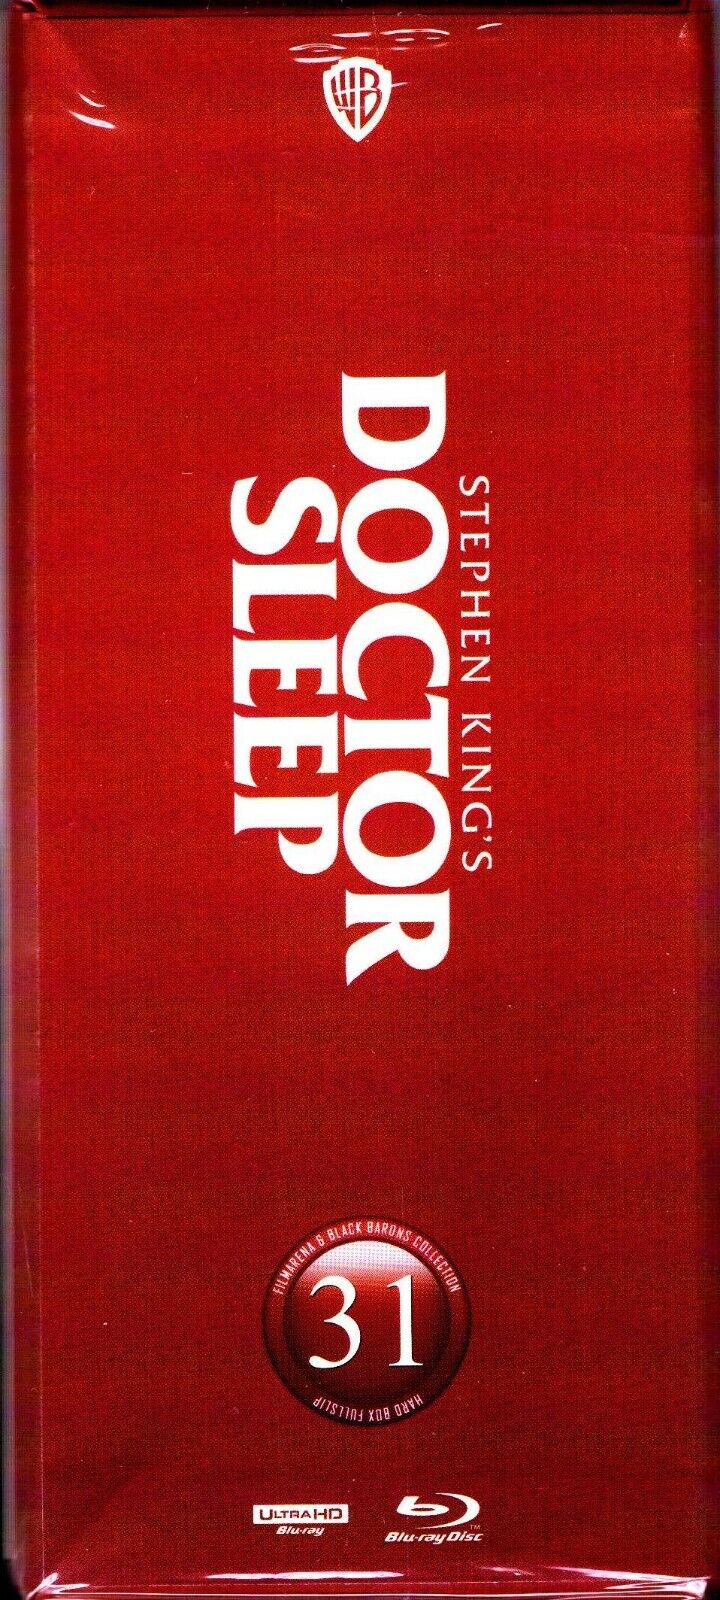 Doctor Sleep 4K: Director's Cut XL 1-Click SteelBook (BB#28)(Czech)